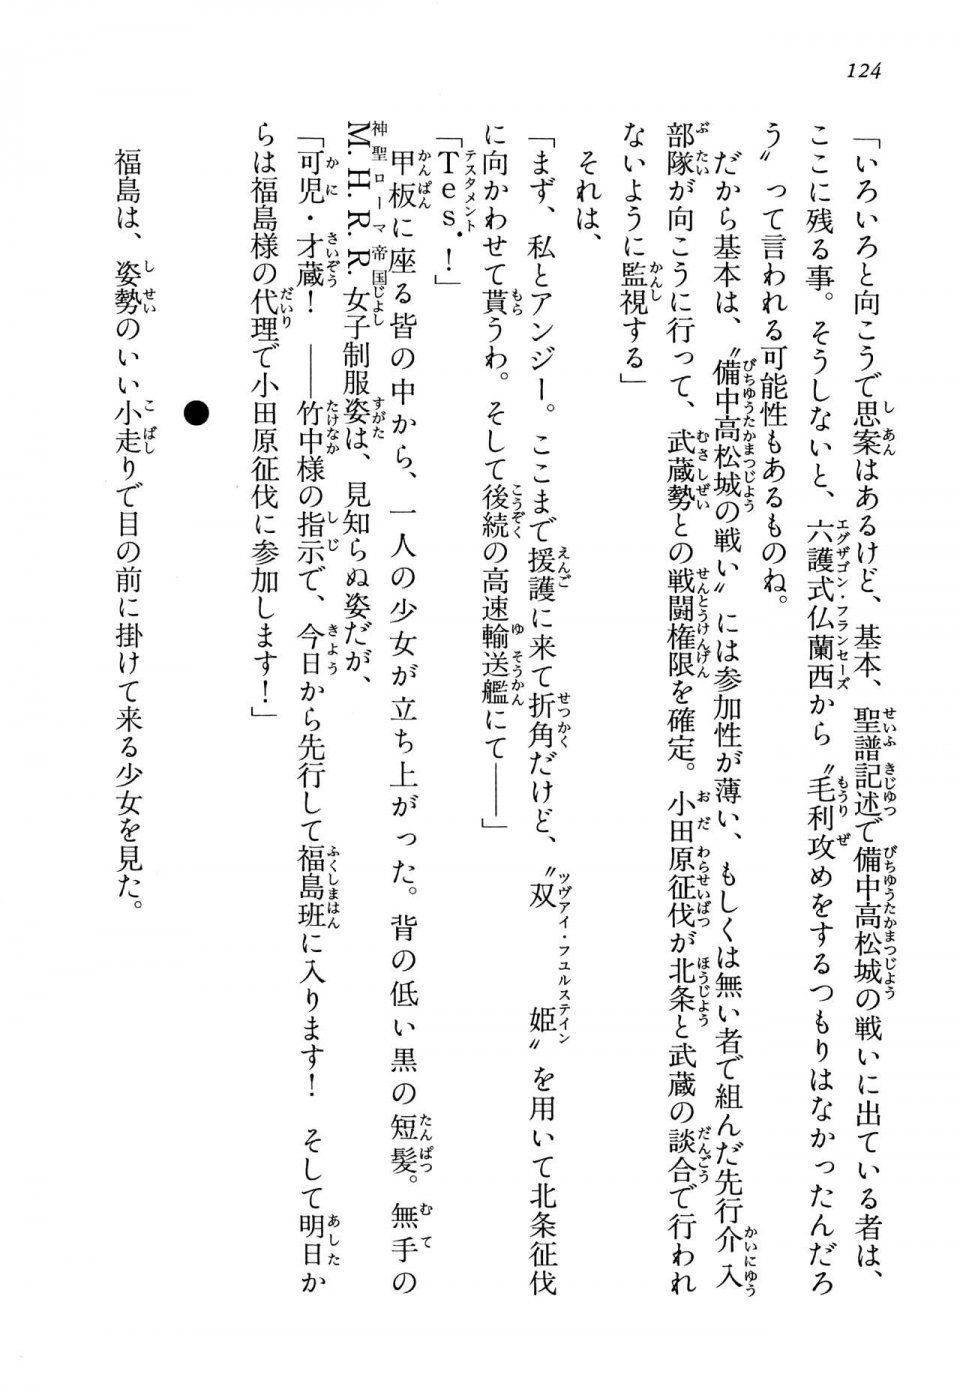 Kyoukai Senjou no Horizon LN Vol 13(6A) - Photo #124